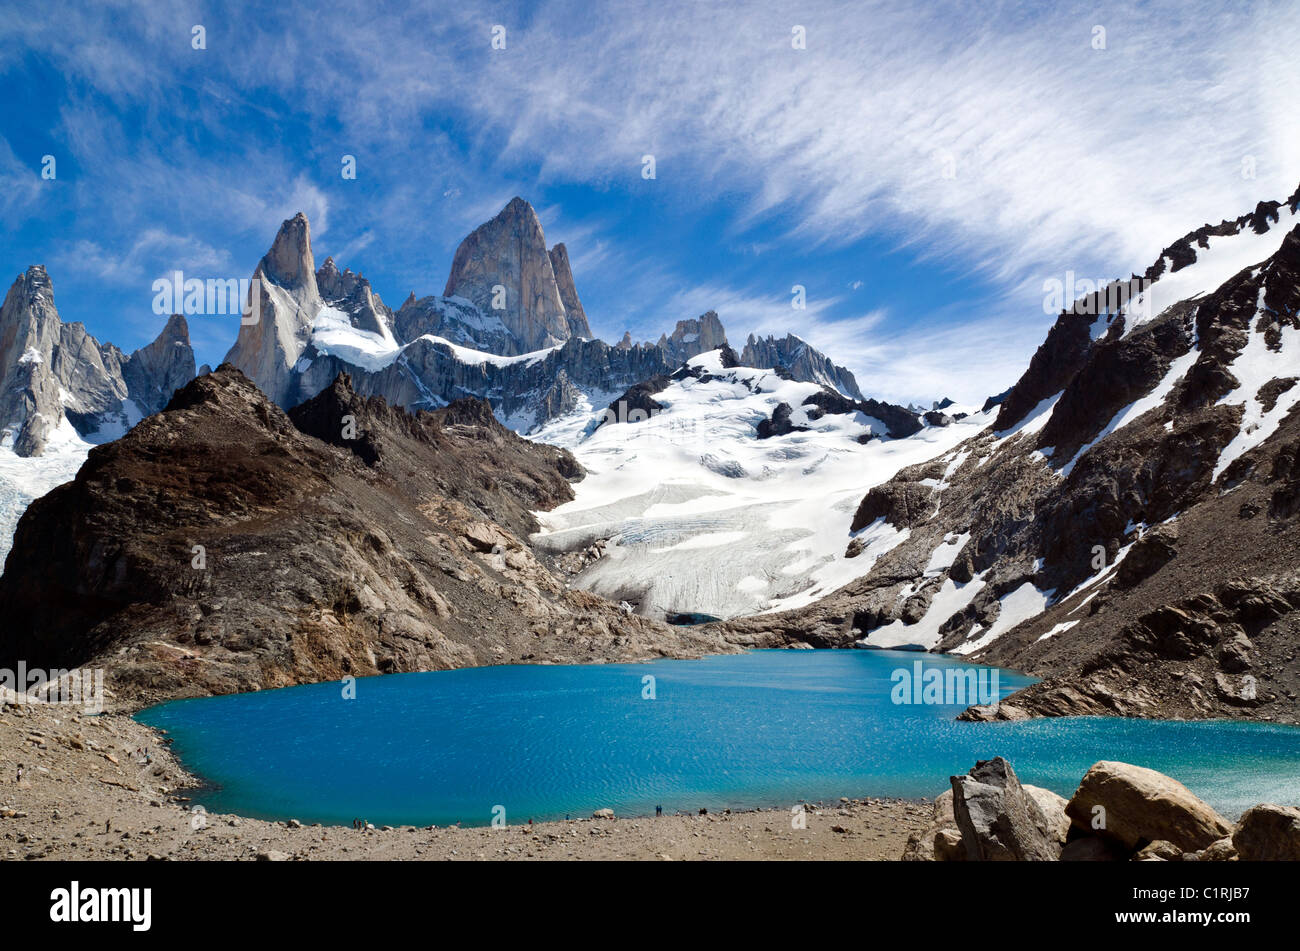 Torre Los Cerros, Los Glaciares National Park, Patagonia, Argentina Stock Photo